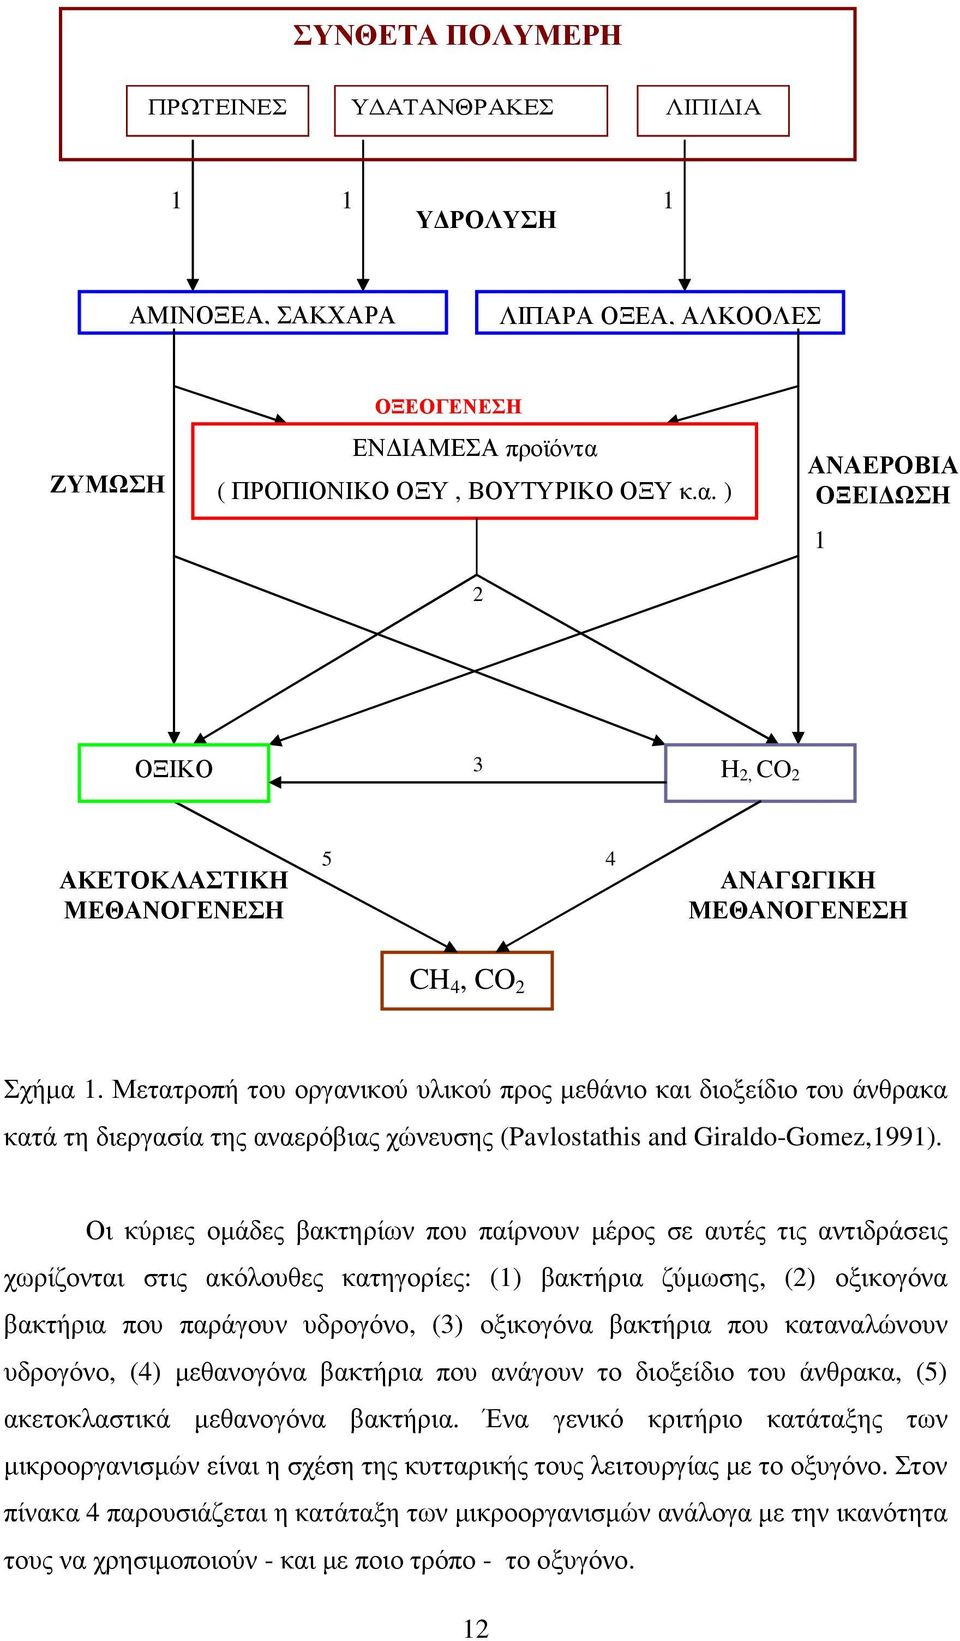 Μετατροπή του οργανικού υλικού προς µεθάνιο και διοξείδιο του άνθρακα κατά τη διεργασία της αναερόβιας χώνευσης (Pavlostathis and Giraldo-Gomez,1991).